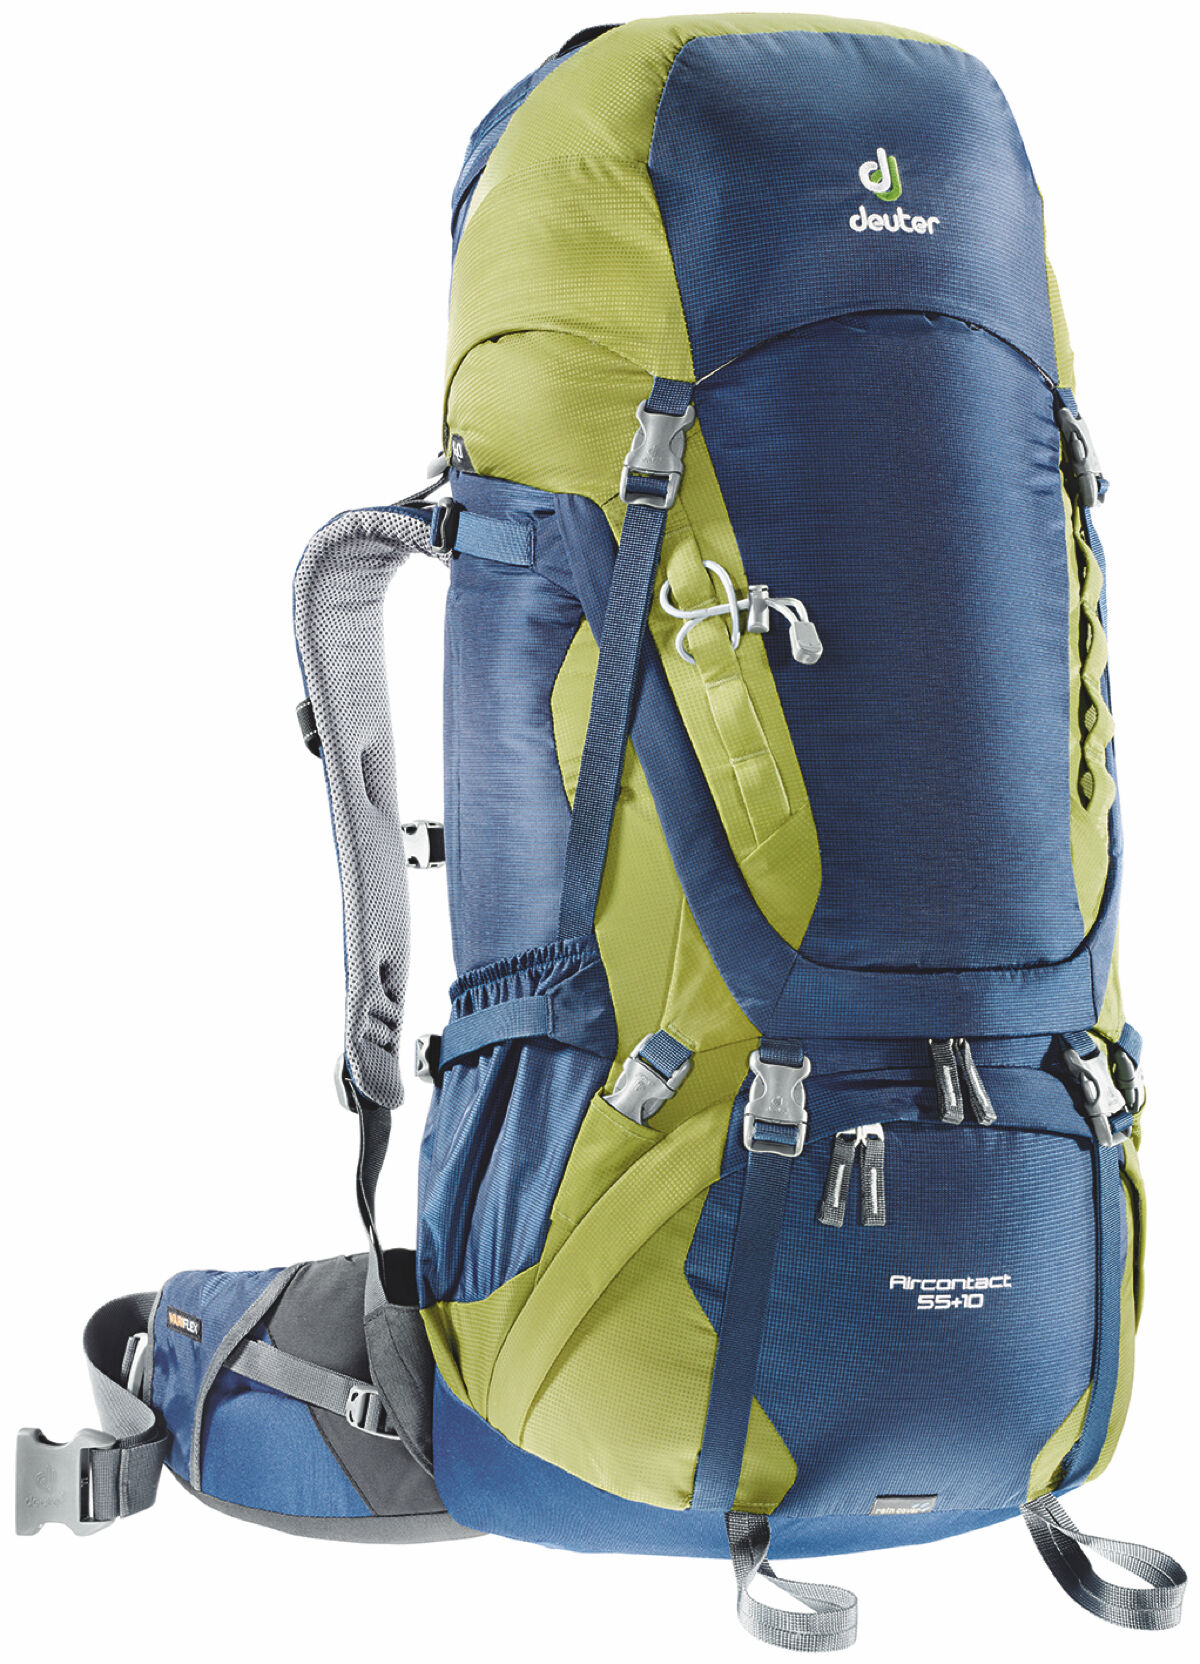 Deuter - AirContact 55+10 - Backpack